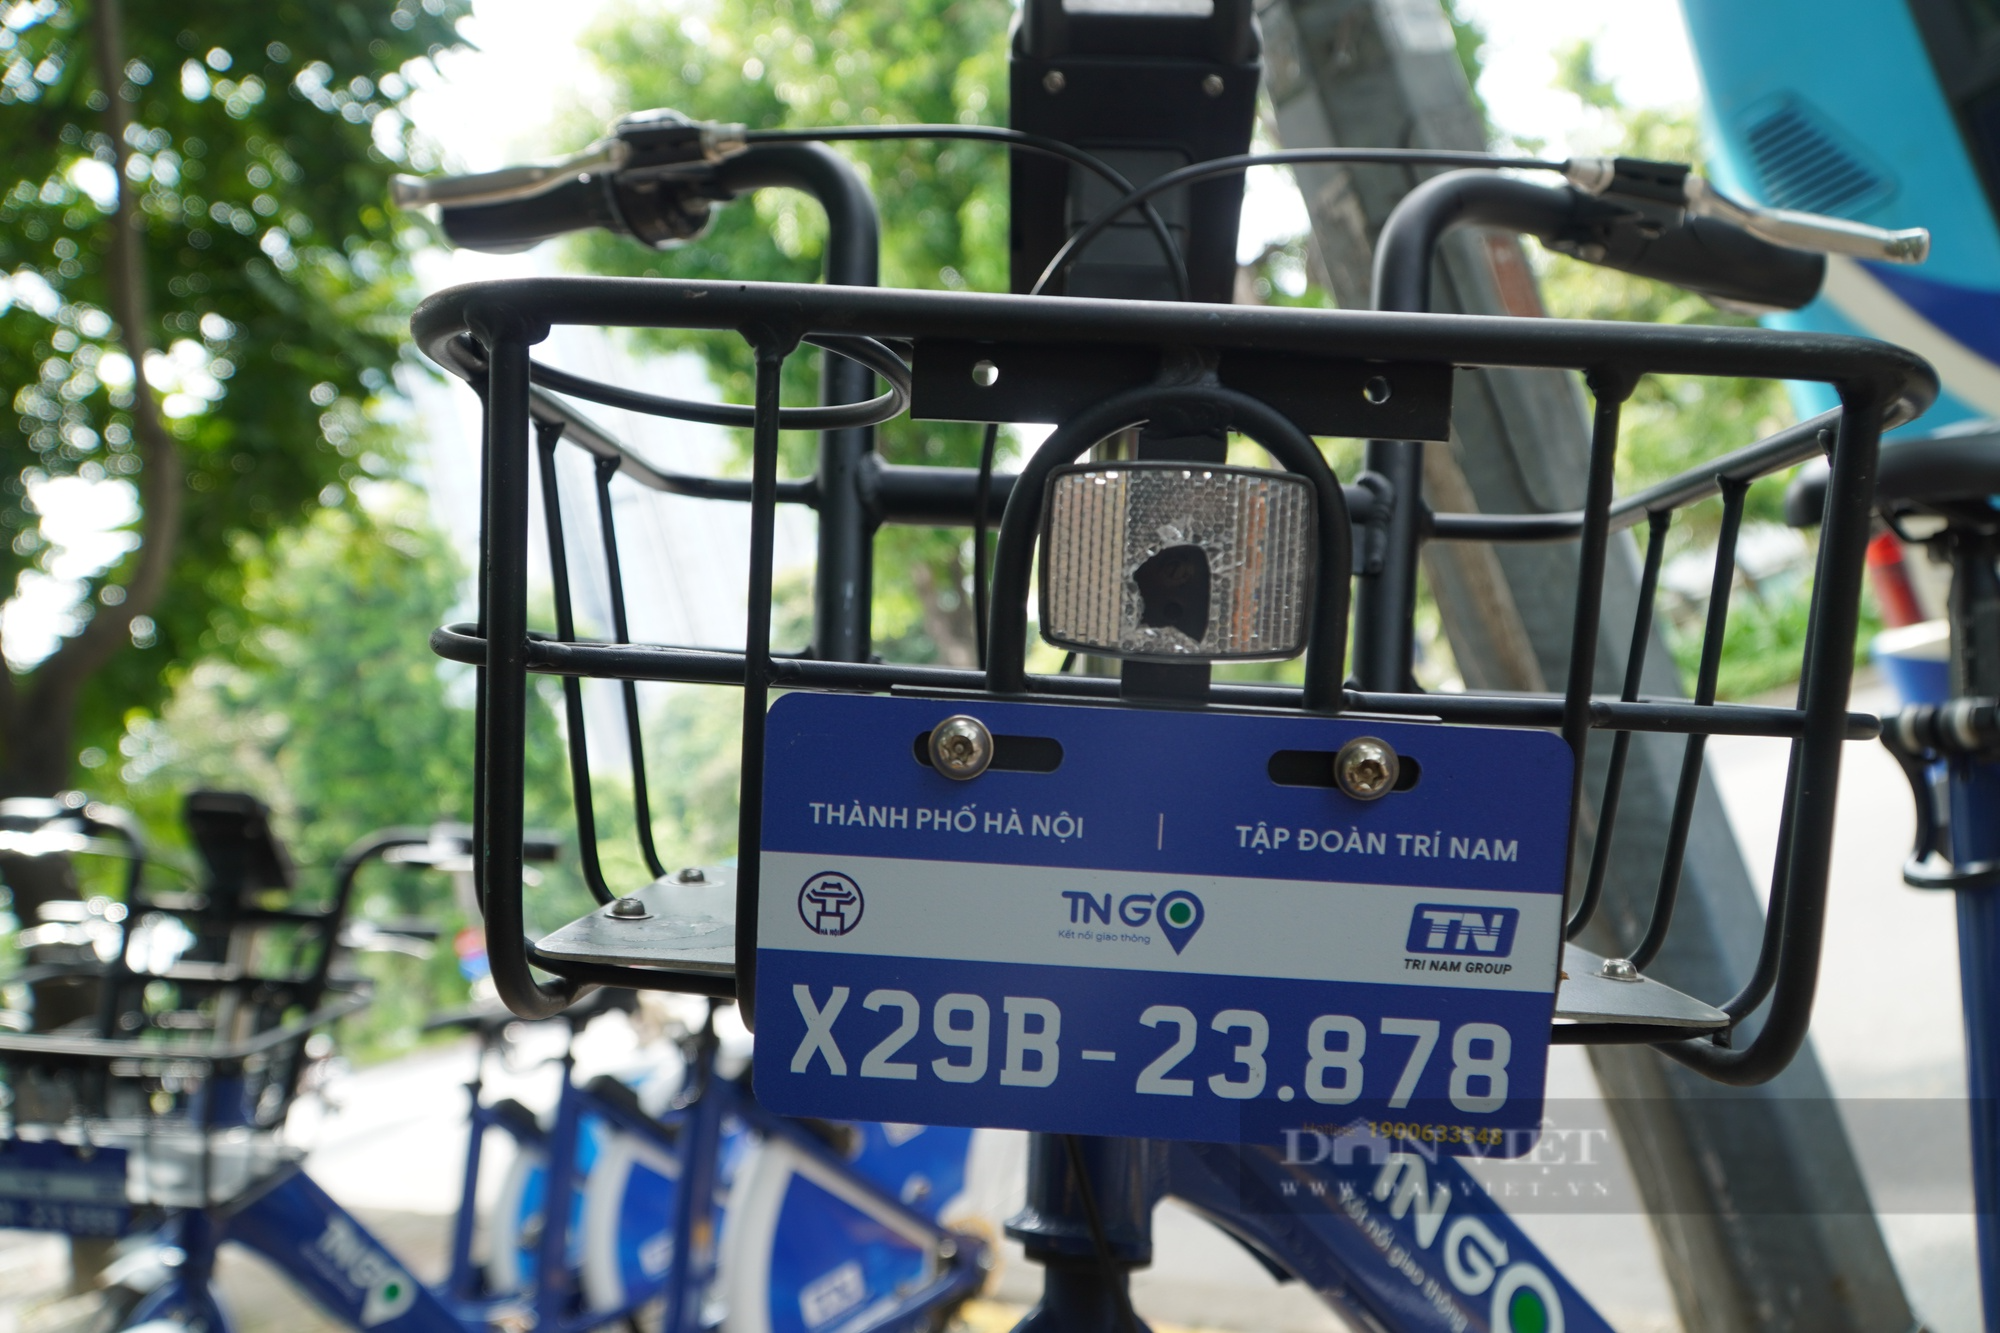 Trải nghiệm dịch vụ xe đạp công cộng, thú vui mới của người Hà Nội - Ảnh 8.